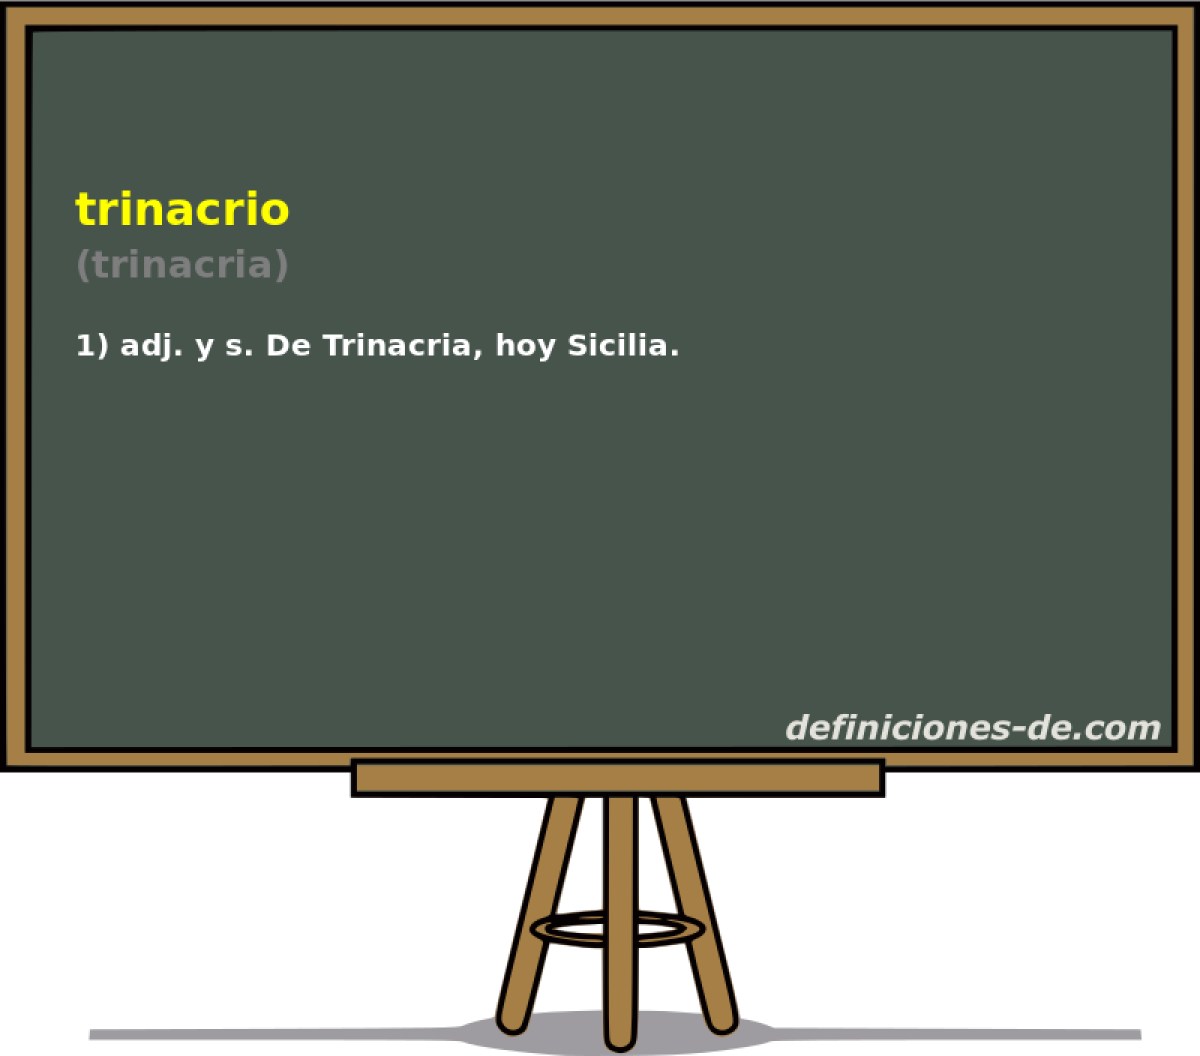 trinacrio (trinacria)